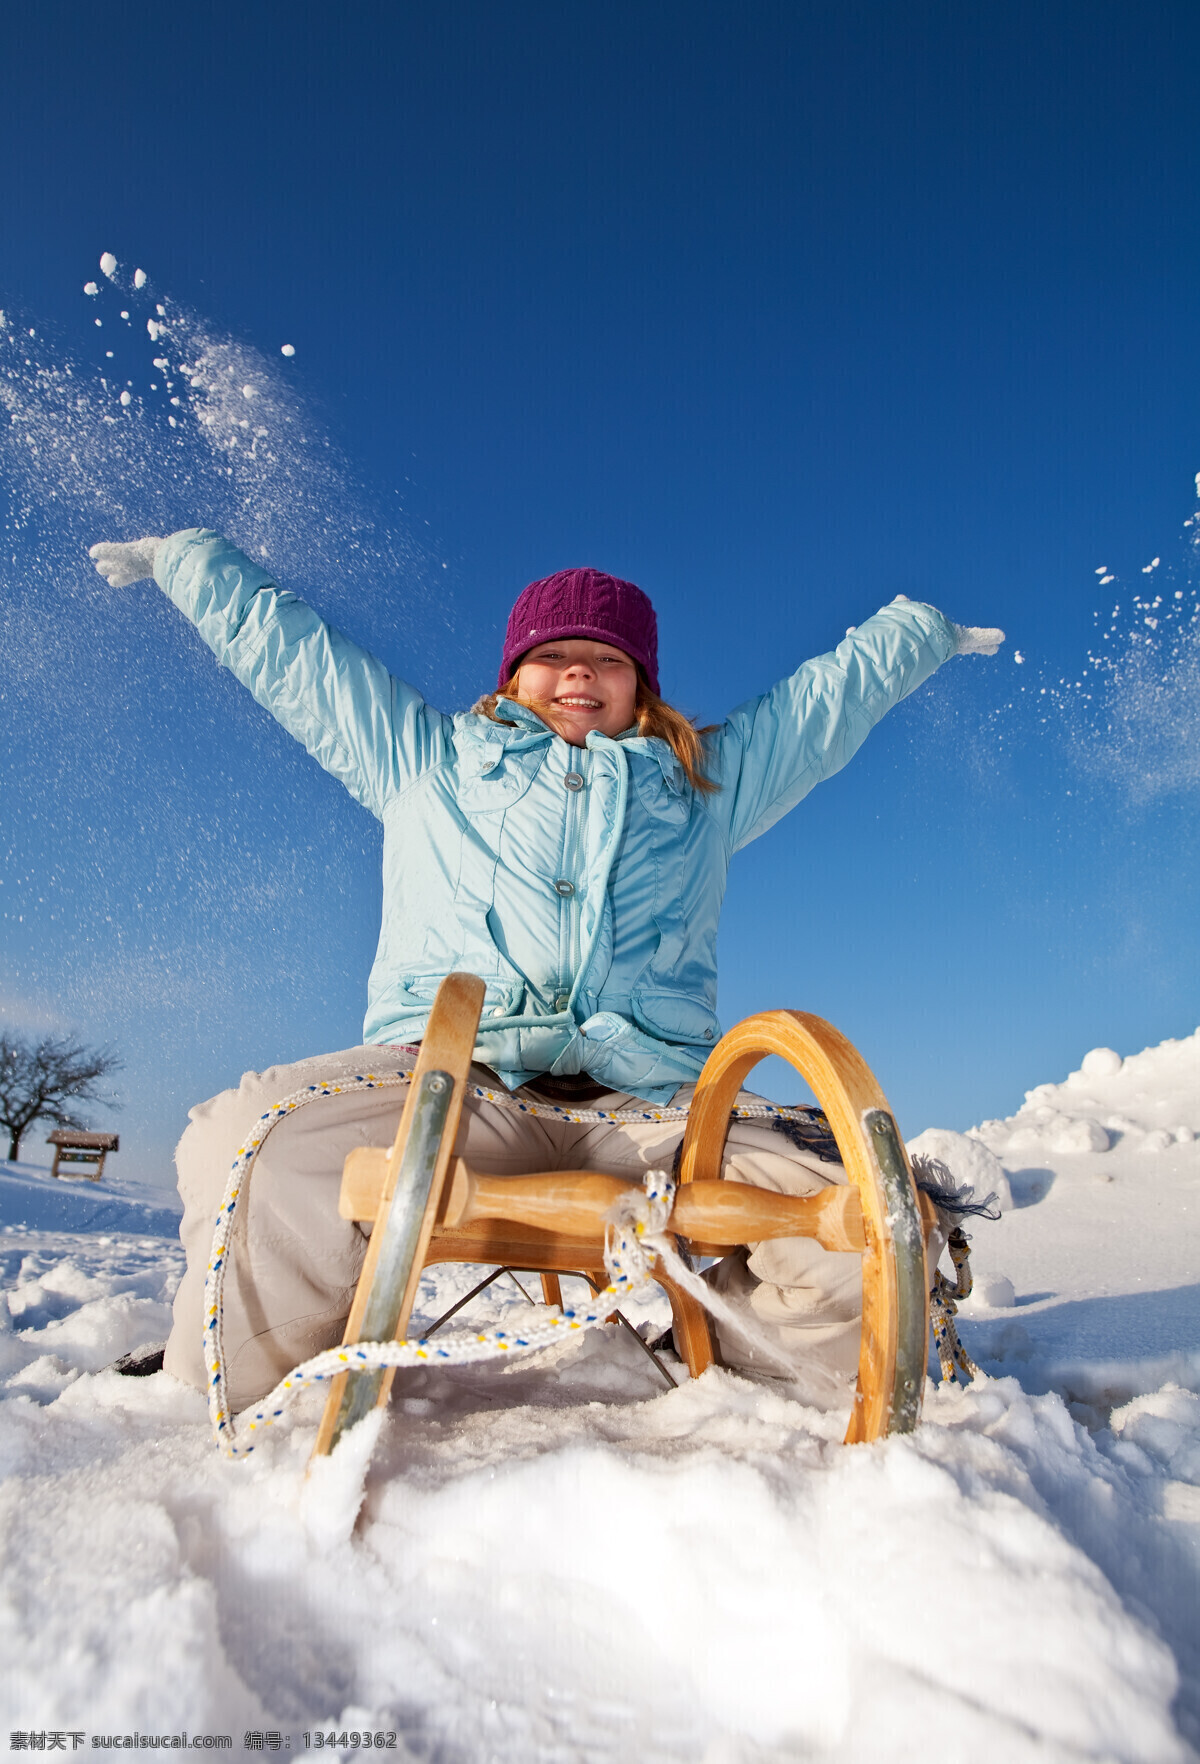 滑雪 儿童摄影 儿童 女孩 雪橇 雪地 雪山 体育 运动 人物 人物摄影 国外人物 生活人物 滑雪图片 生活百科